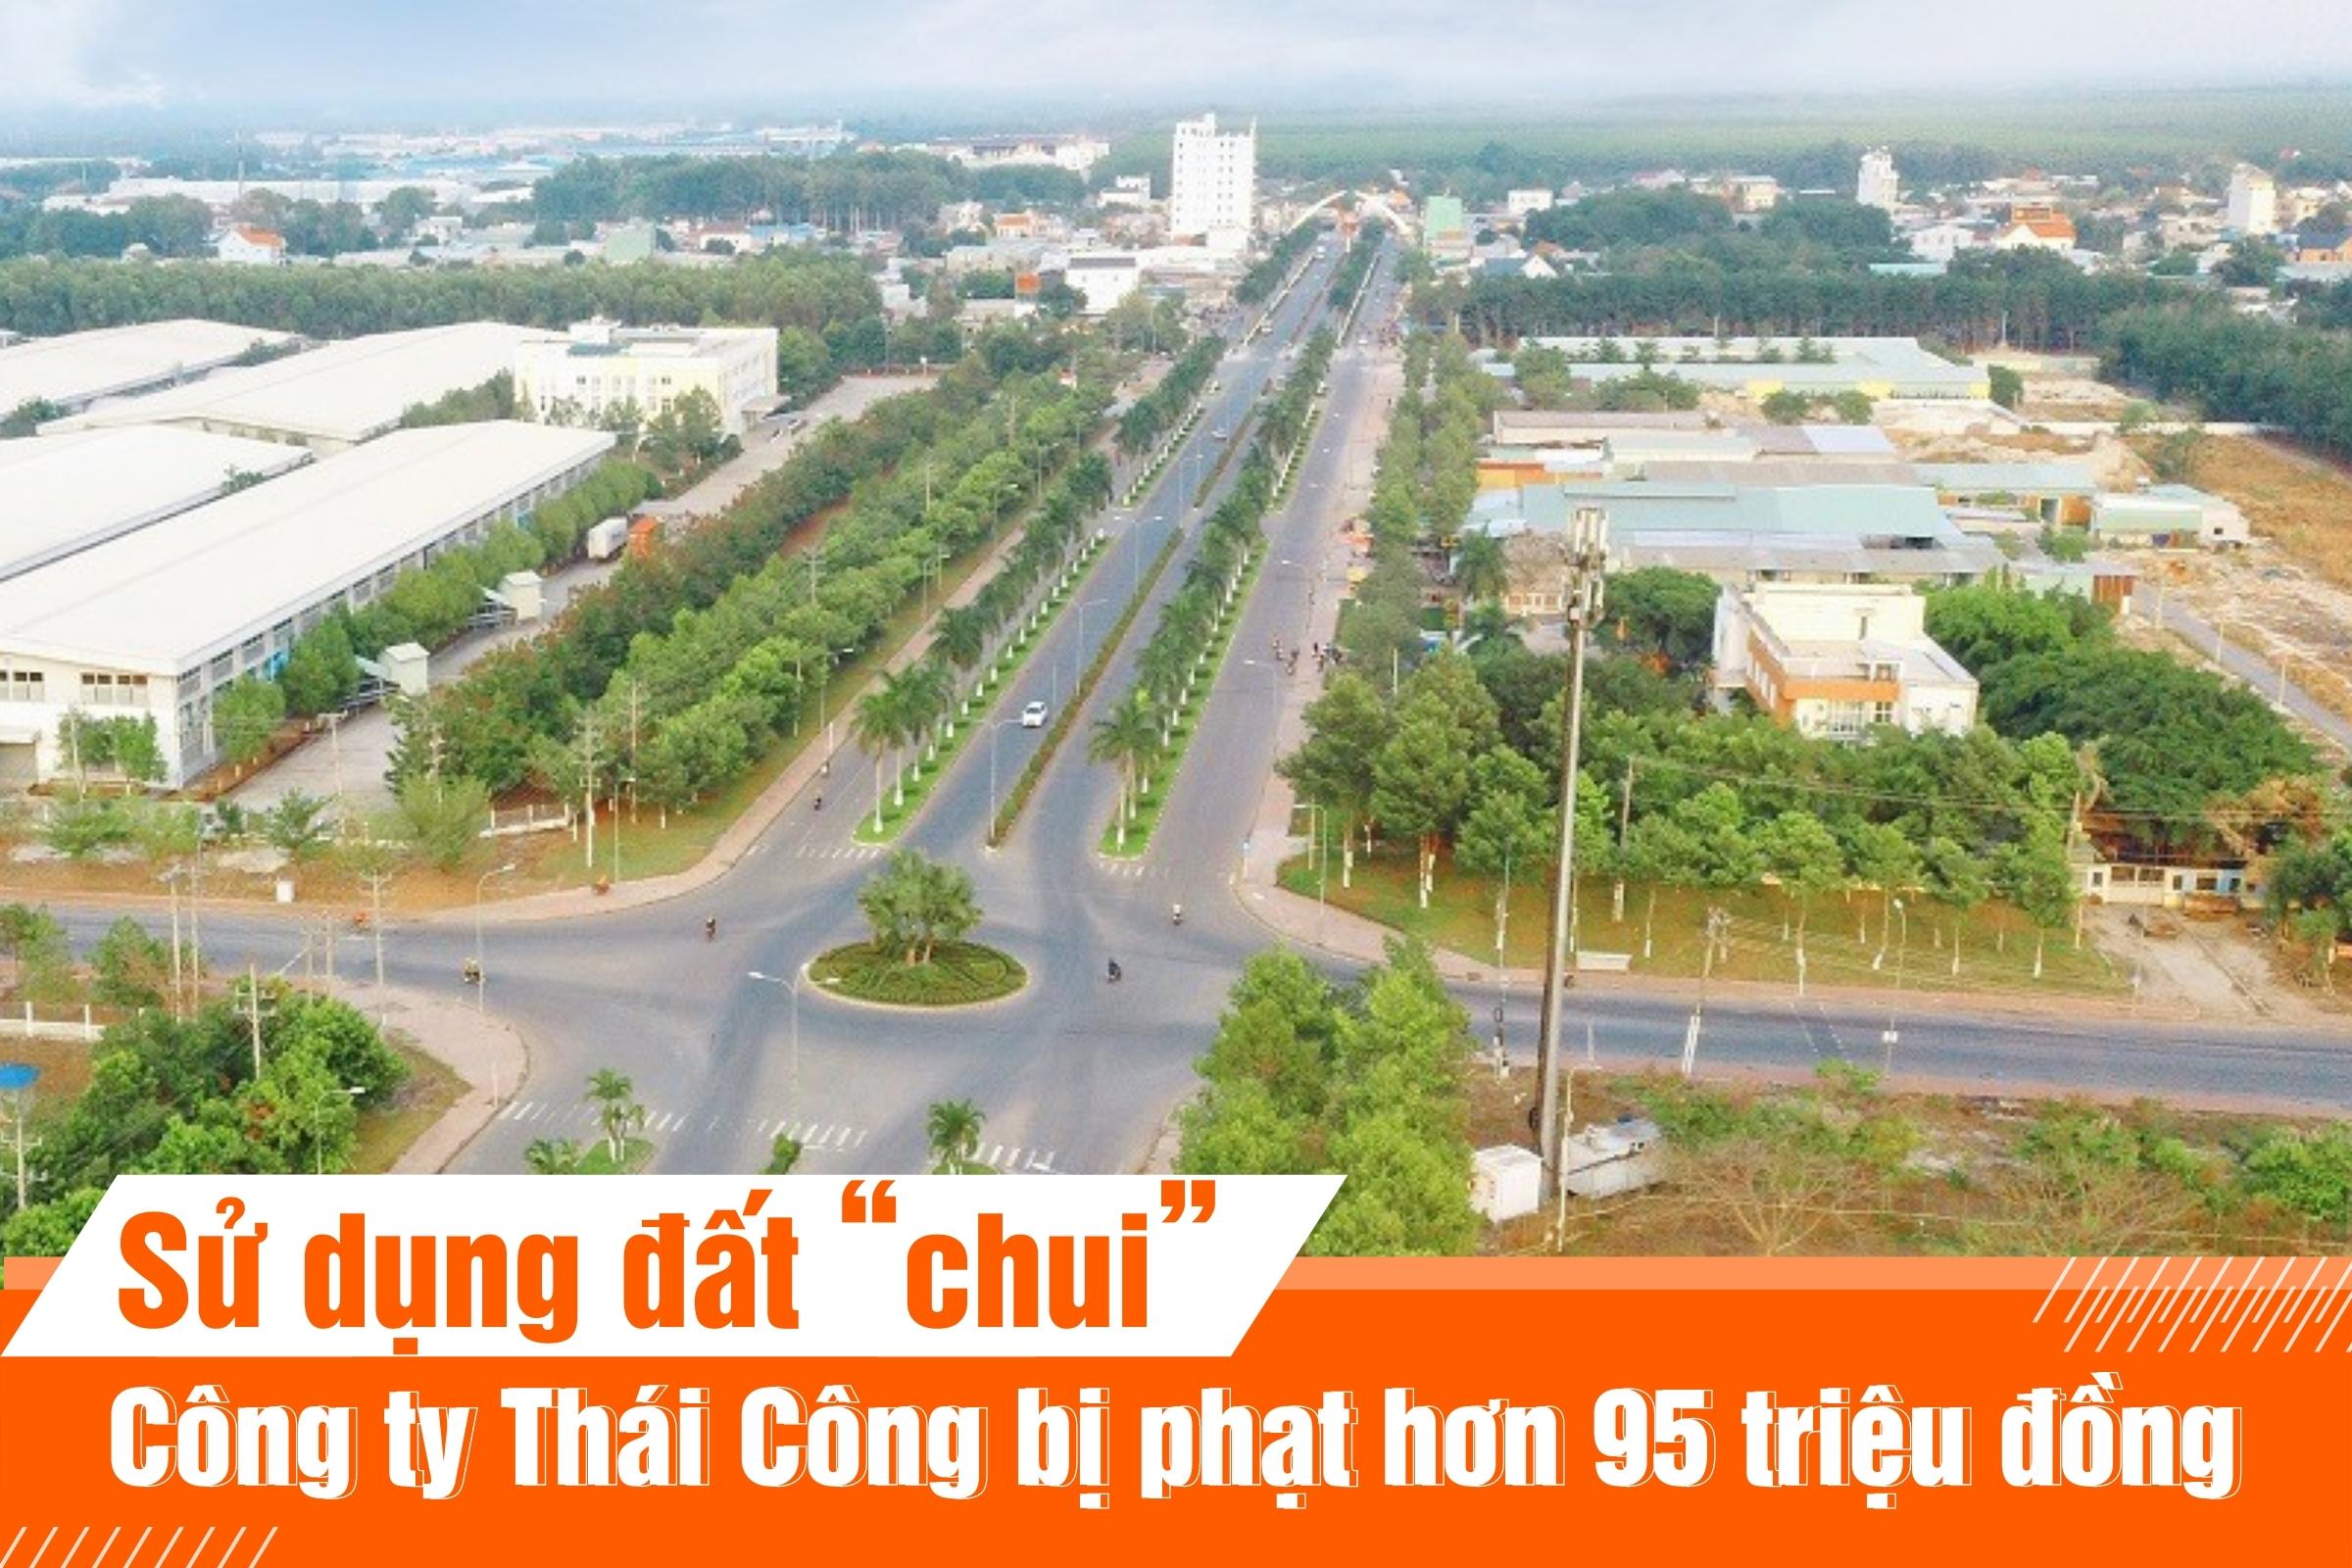 Sử dụng đất “chui”, công ty Thái Công bị phạt hơn 95 triệu đồng